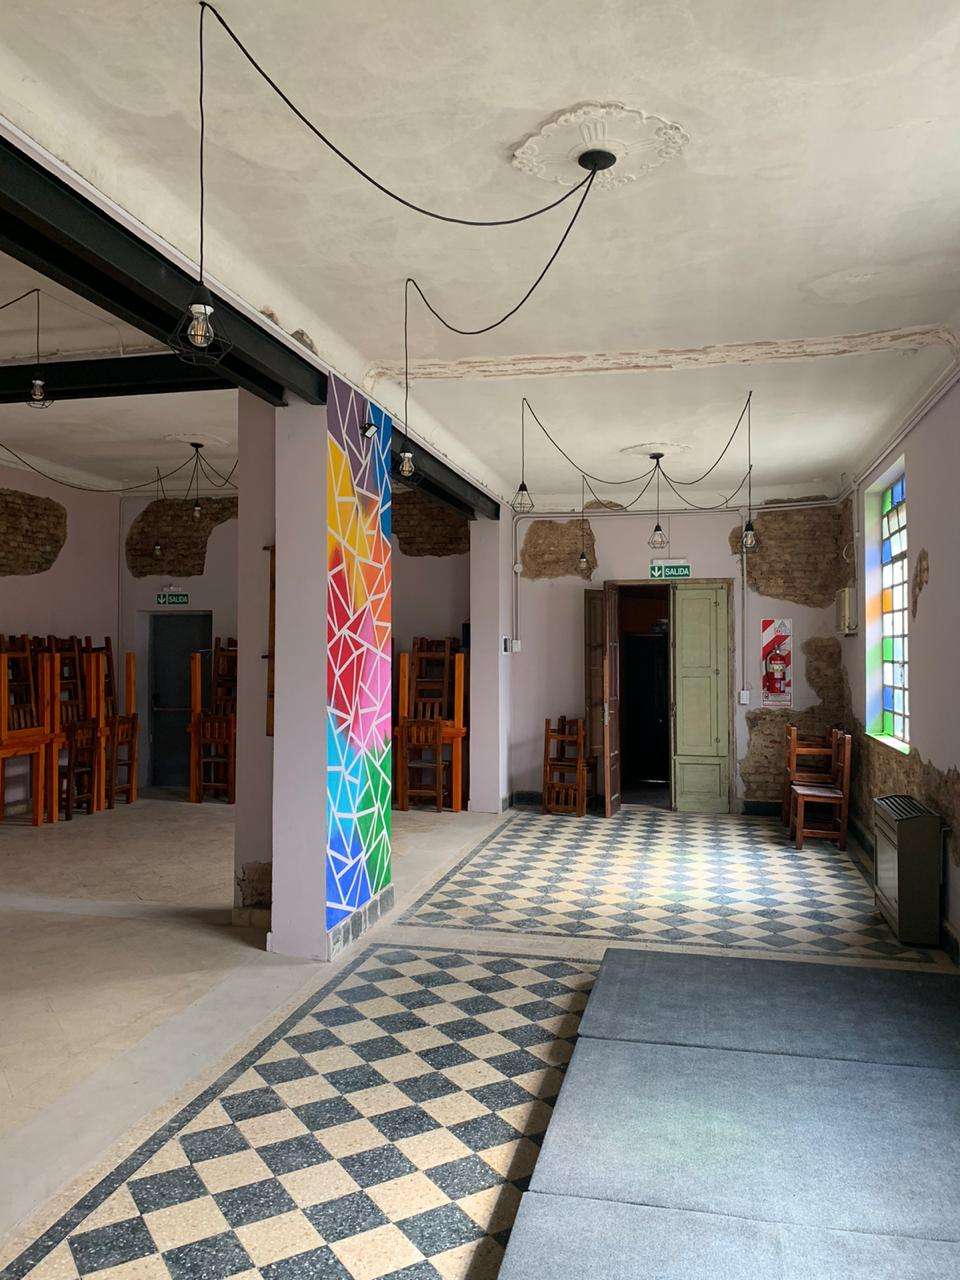 Patio de Alondras, un espacio cultural familiar pensado para artistas y emprendedores locales